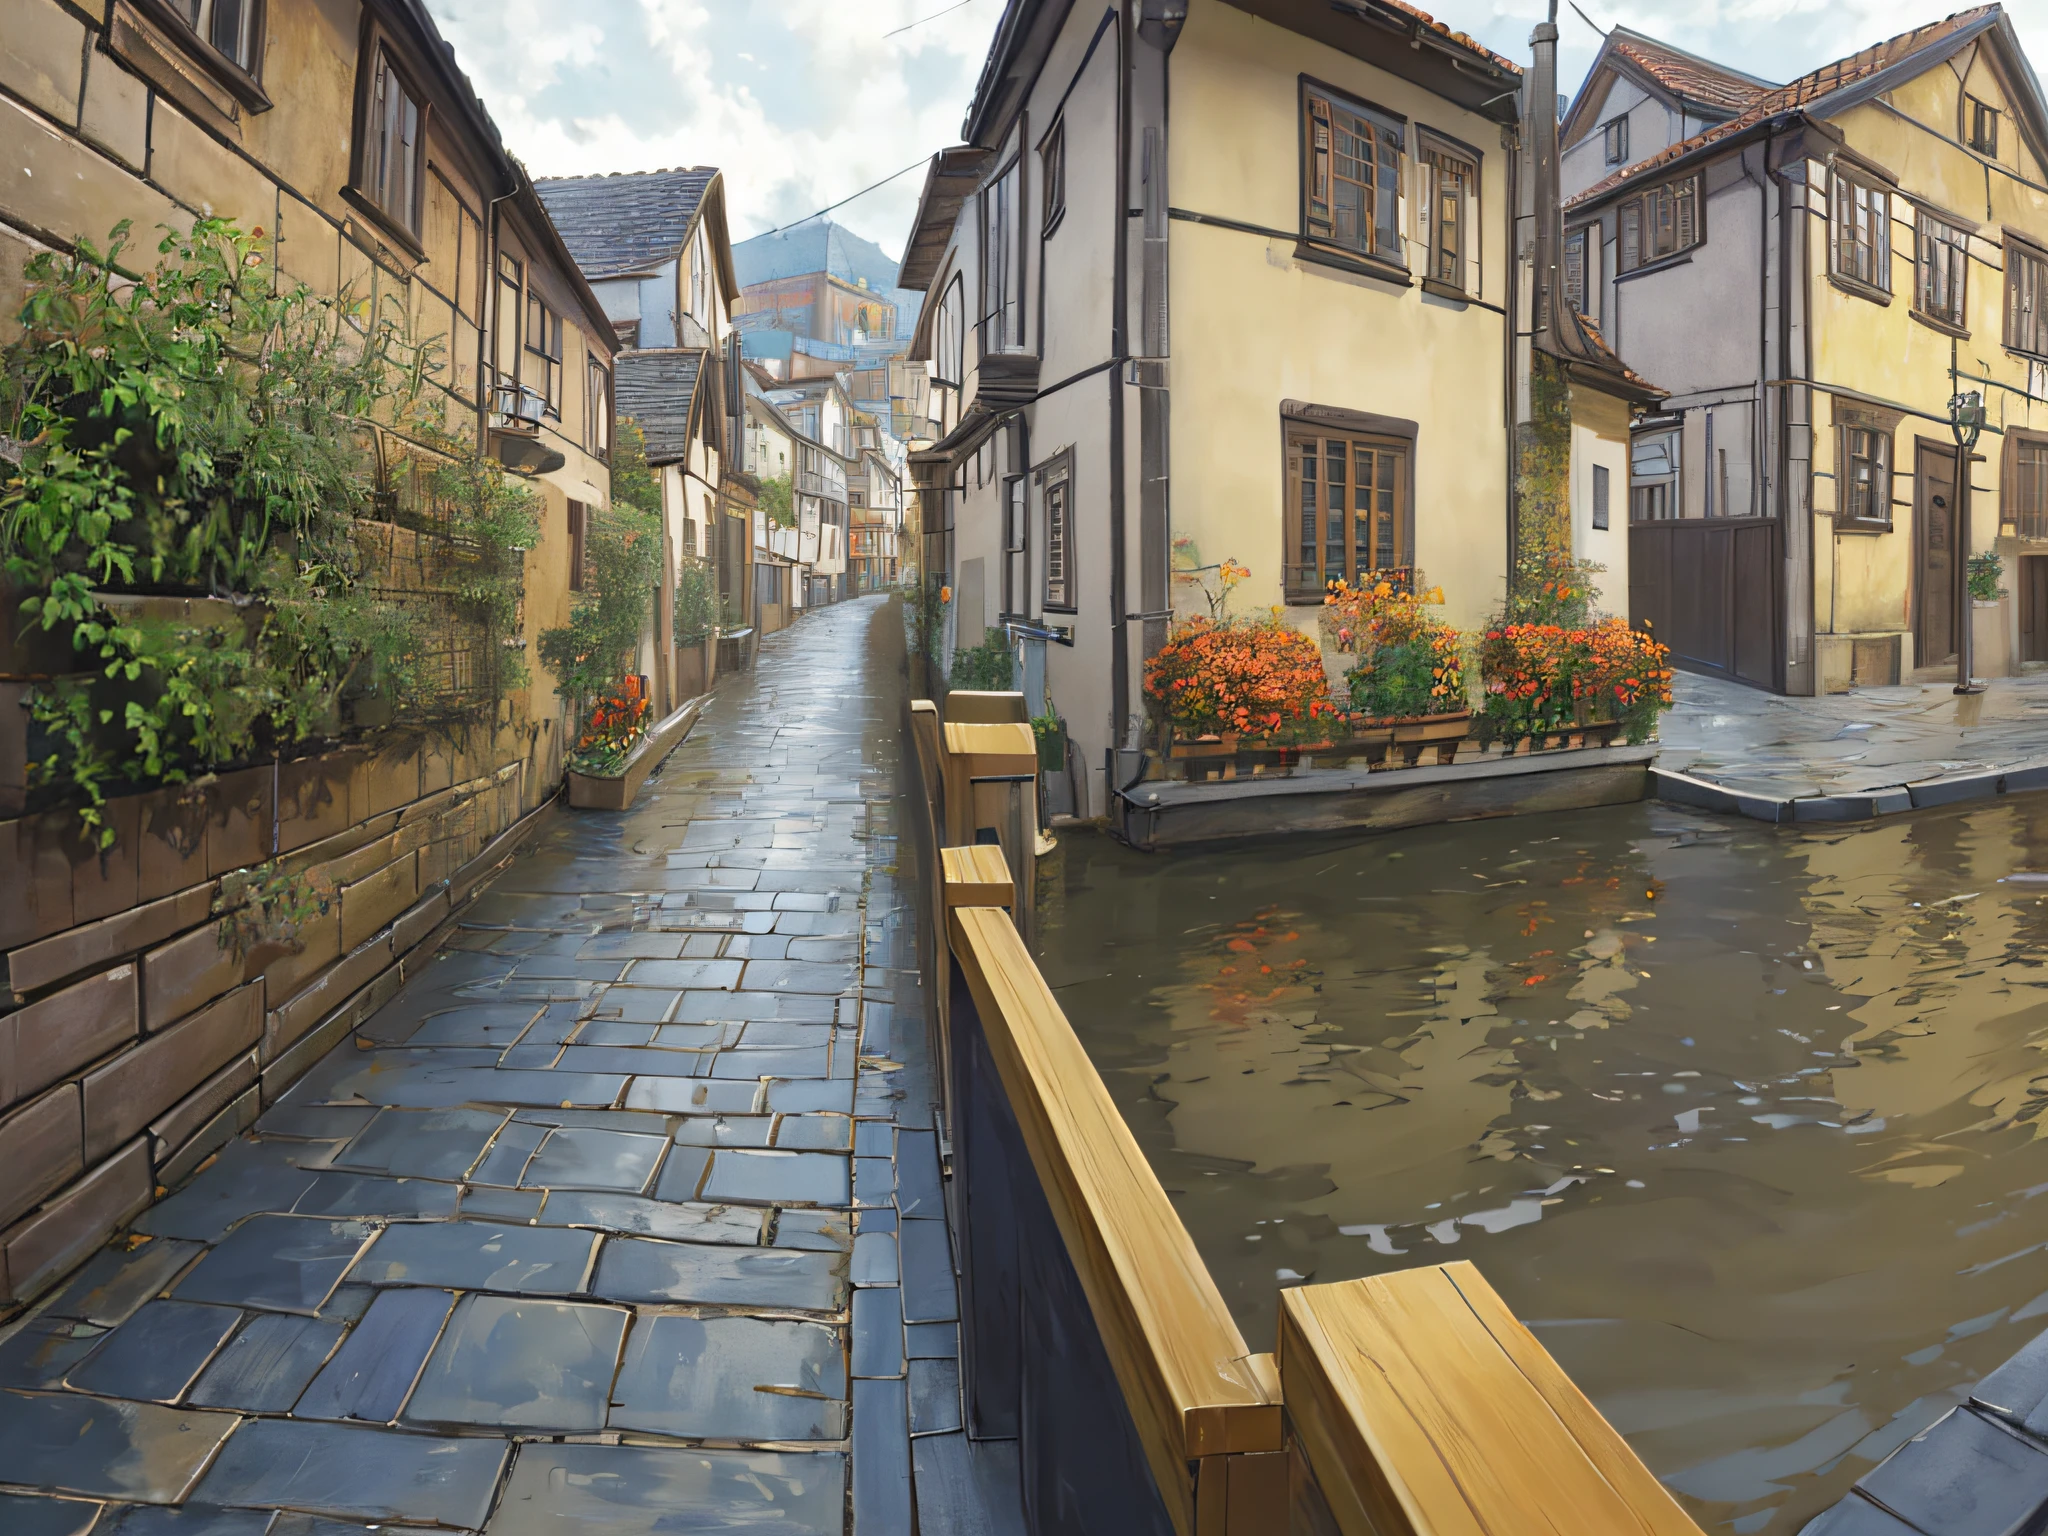 ((obra de arte)), (8K, alto_Resolução),(melhor qualidade), Cidade antiga, Rua estreita, Casas Europeias, nublado, outono, estilo kyoani haruhi, muito bonito